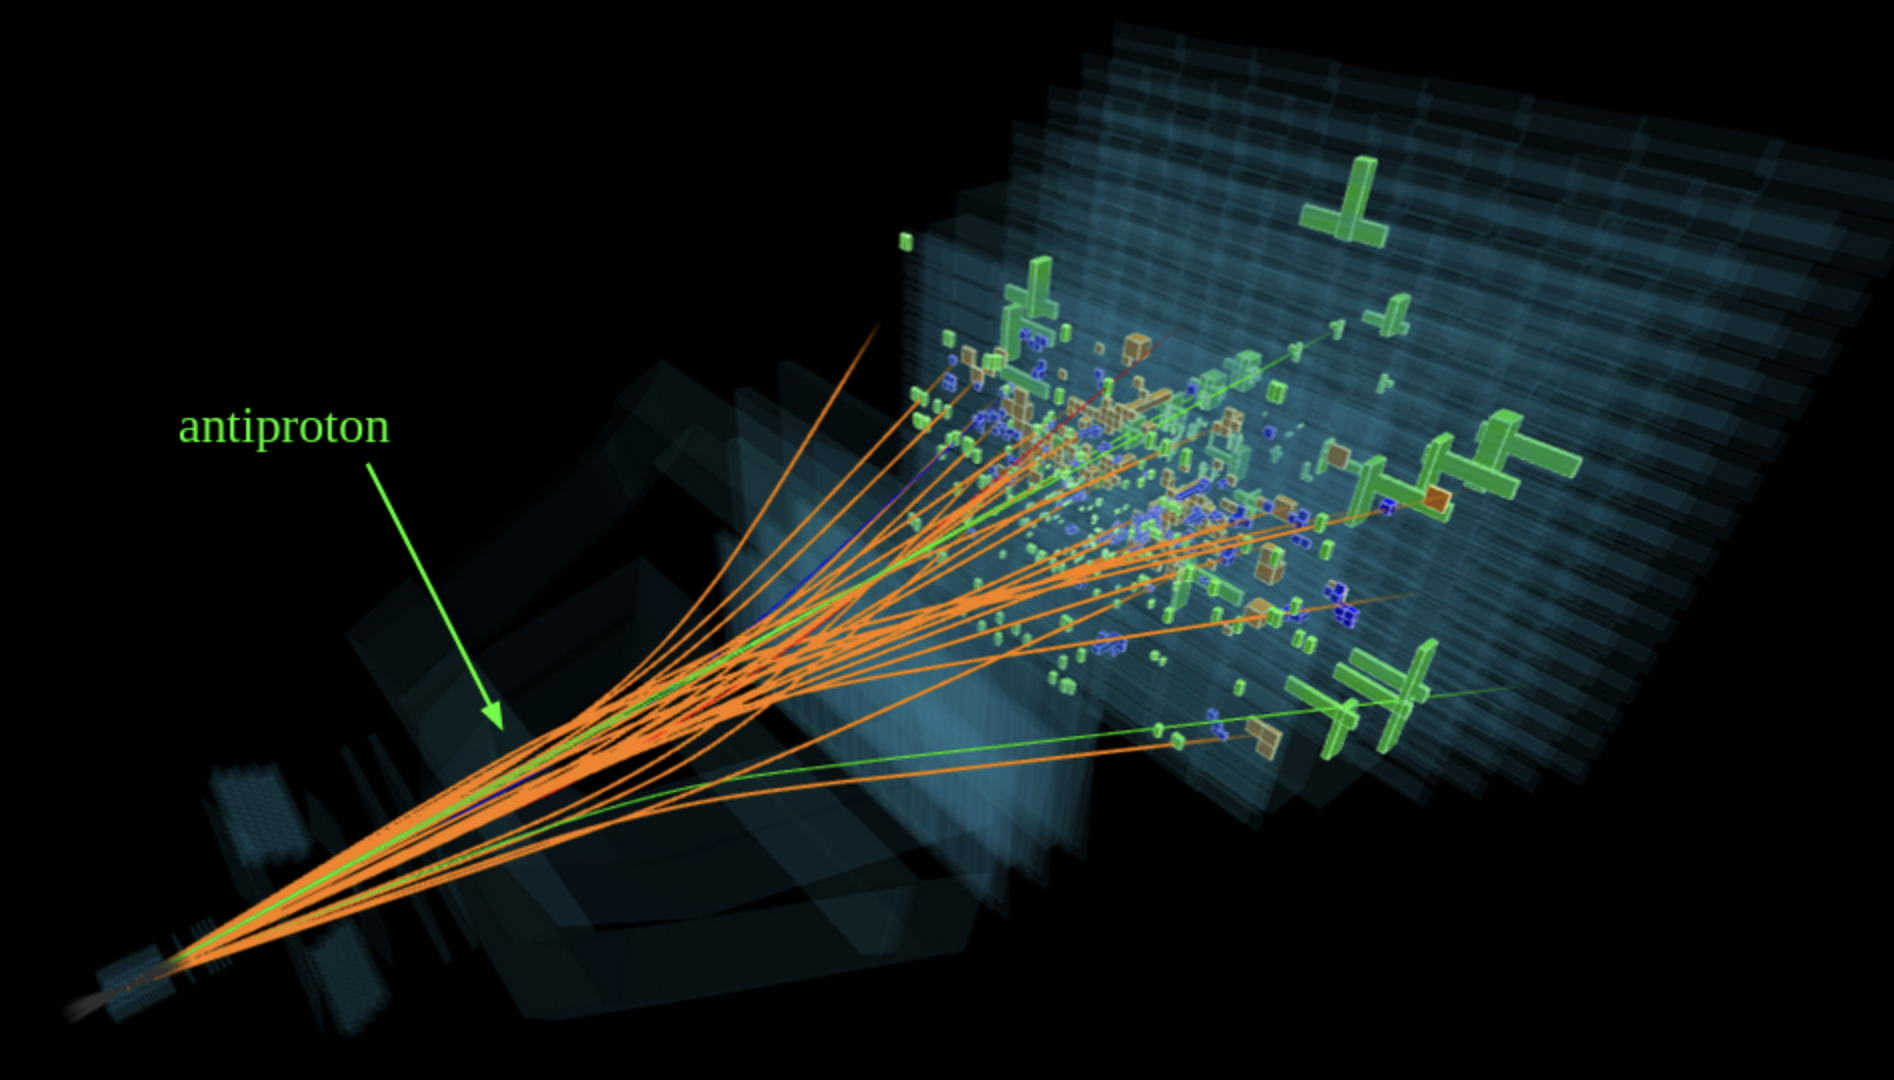 Zdarzenie zderzenia proton-proton zarejestrowane przez detektor LHCb, pokazujące tor, po którym porusza się antyproton powstały w zderzeniu
